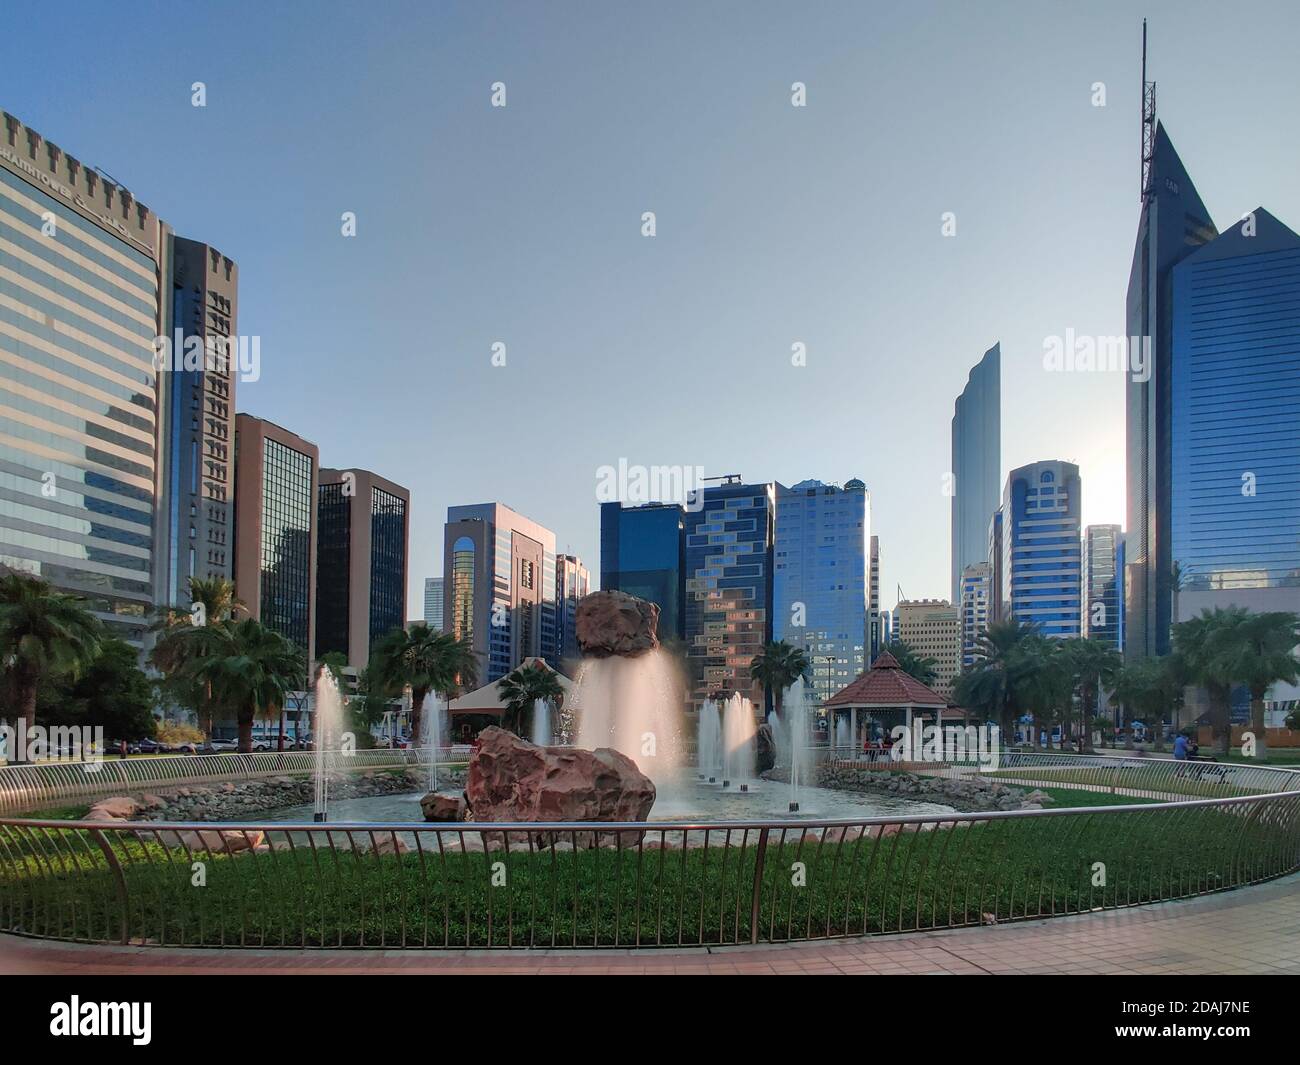 Berühmter Stadtpark von Abu Dhabi in der Innenstadt - wunderschön modern parkszene bei Sonnenuntergang umgeben von Wolkenkratzern - stressfrei Anzeigen Stockfoto